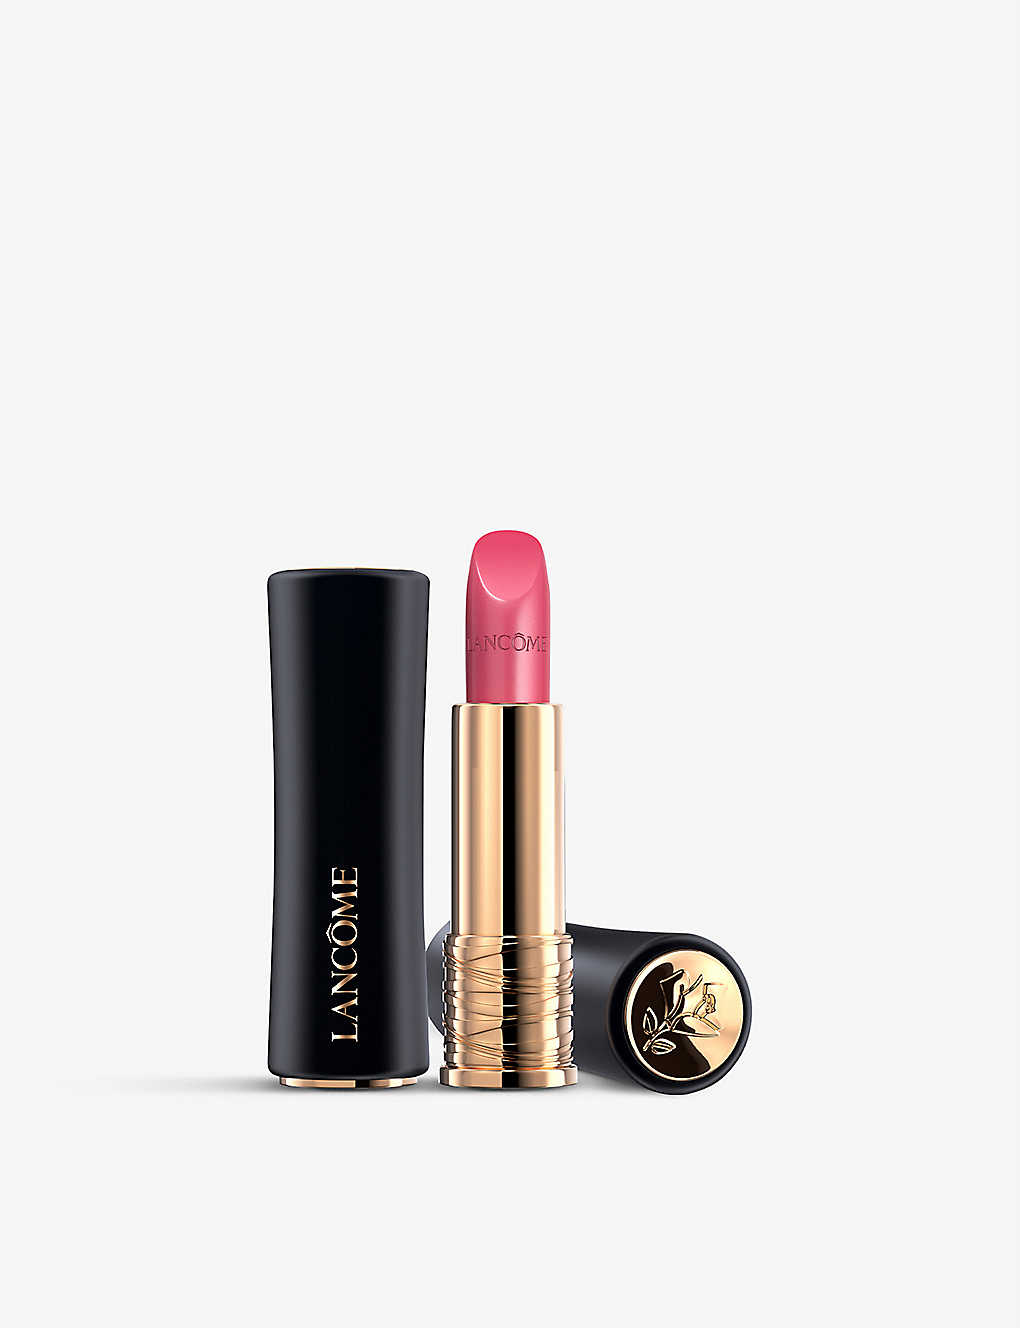 Lancôme L'absolu Rouge Cream Lipstick 3.4g In 8